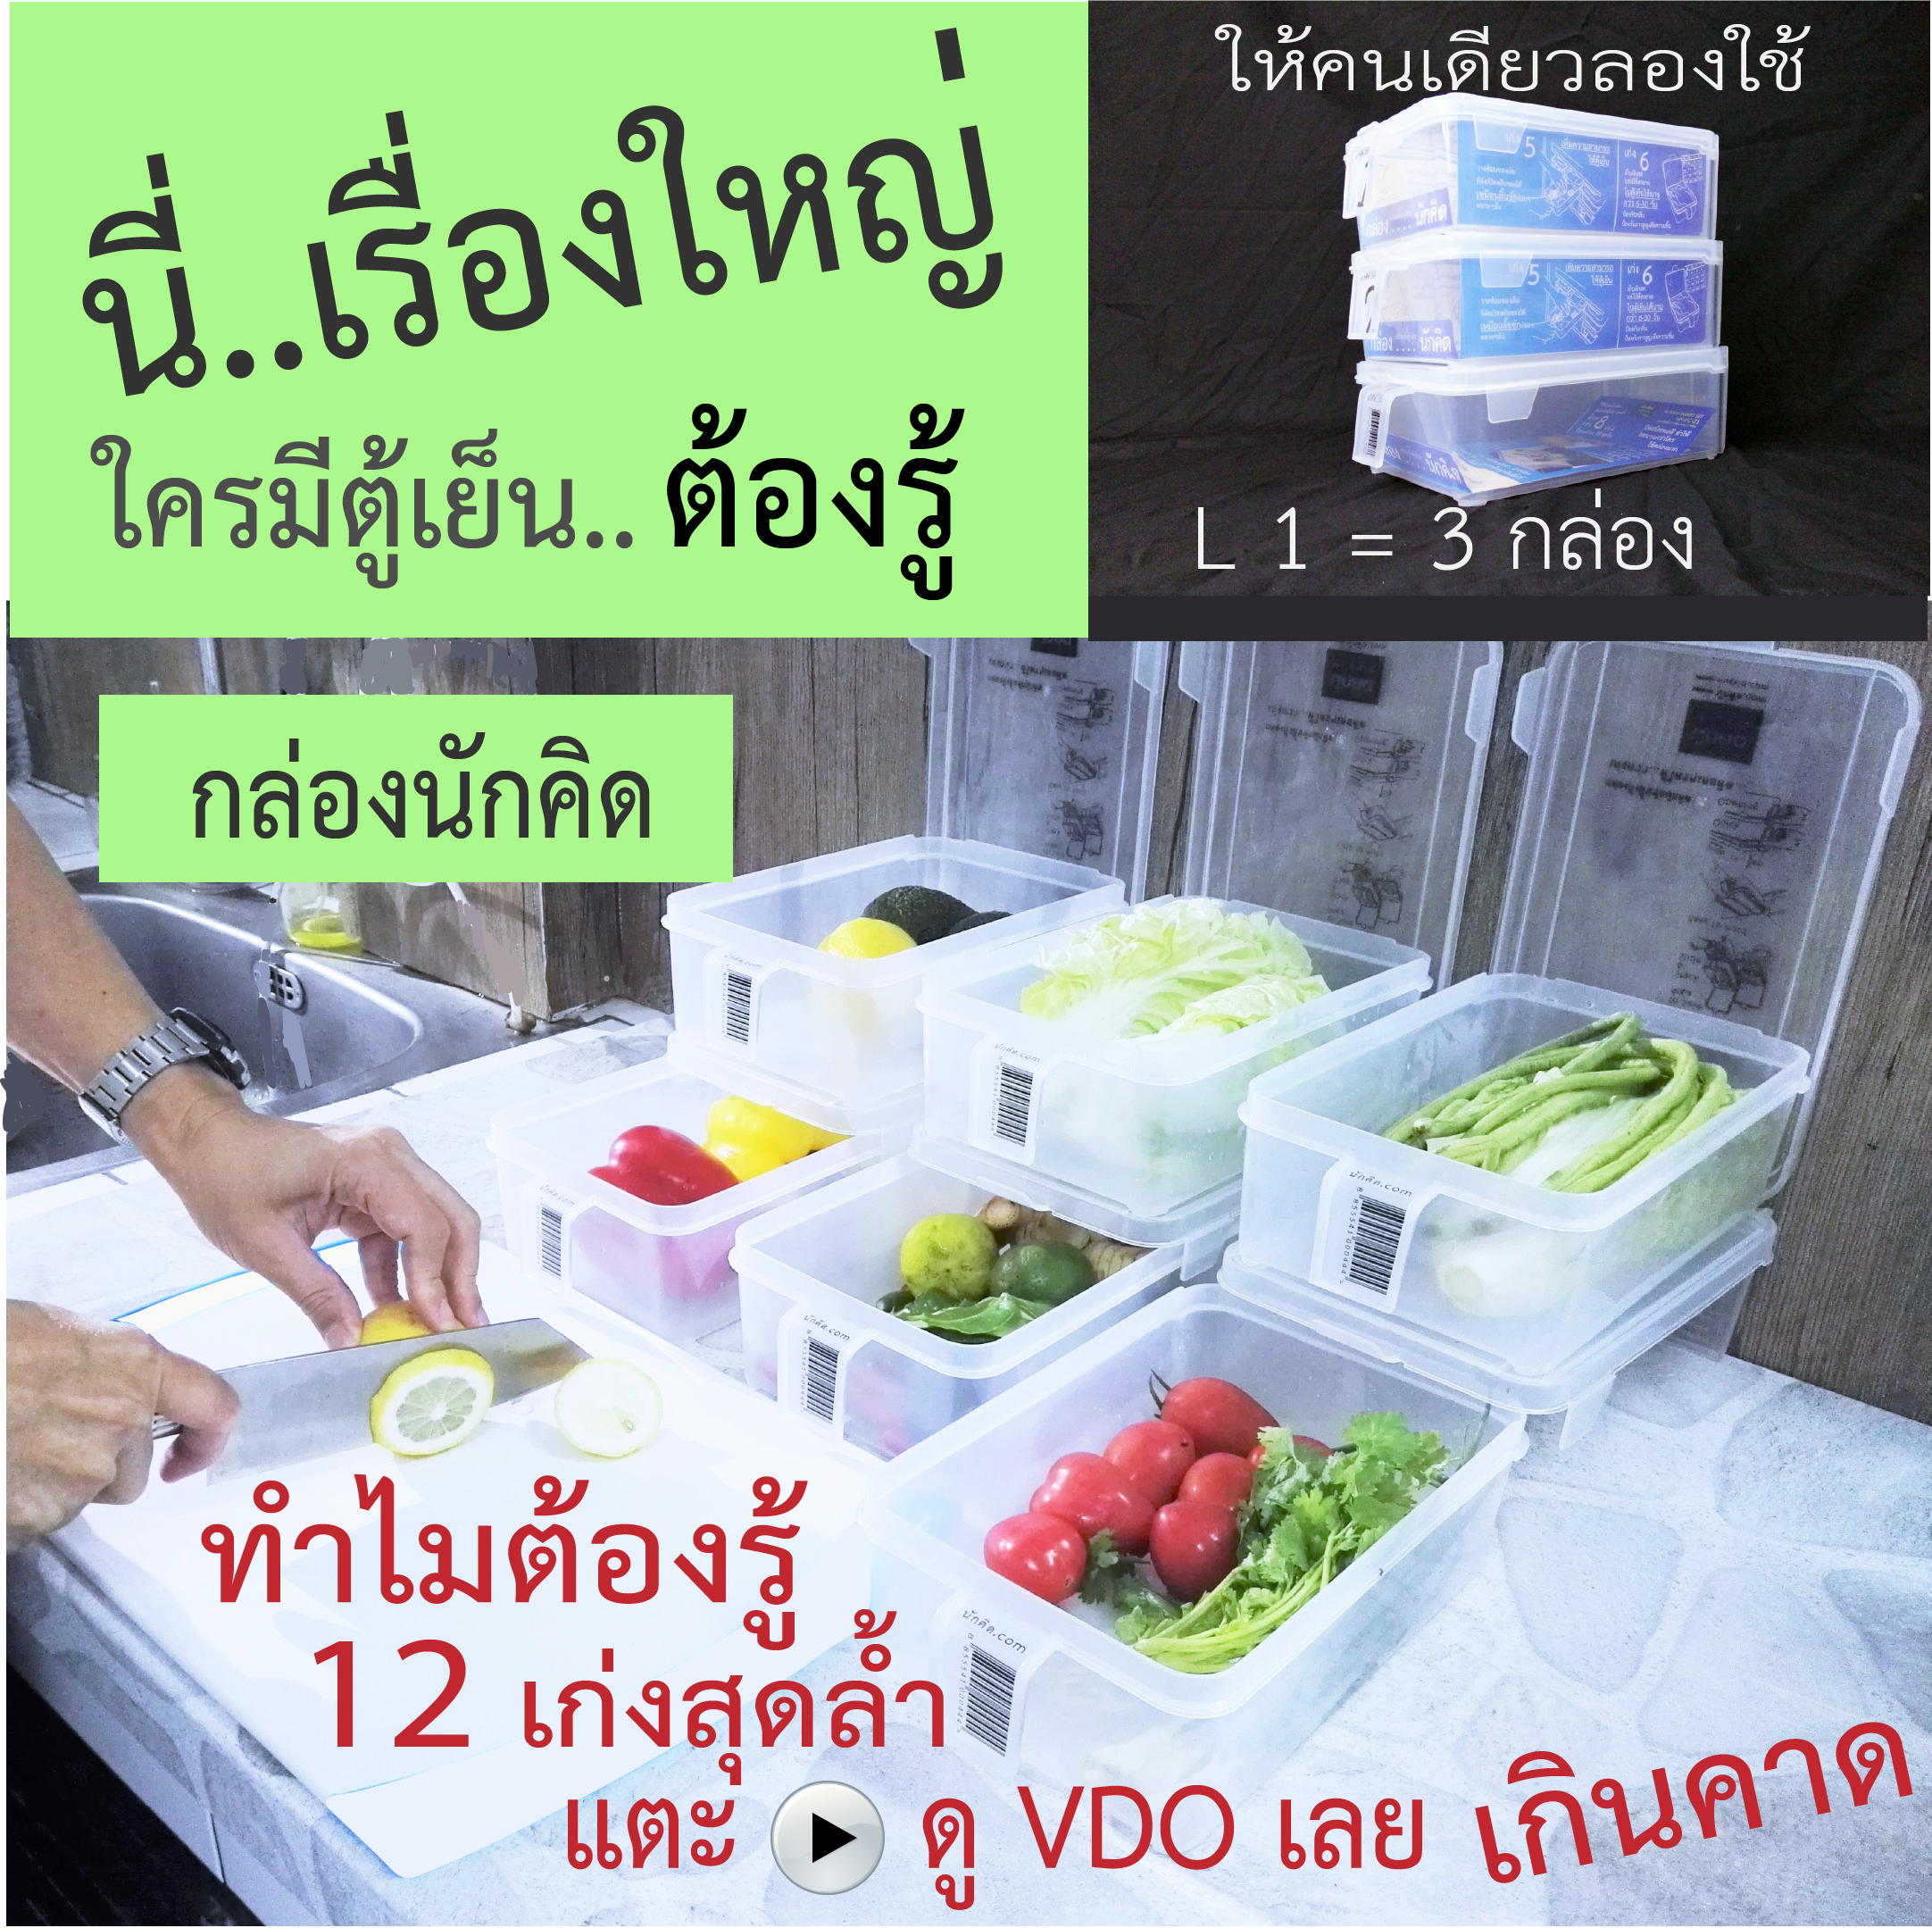 กล่องถนอมอาหาร กล่องจัดตู้เย็น กล่องนักคิด L1 ได้ 3 กล่อง